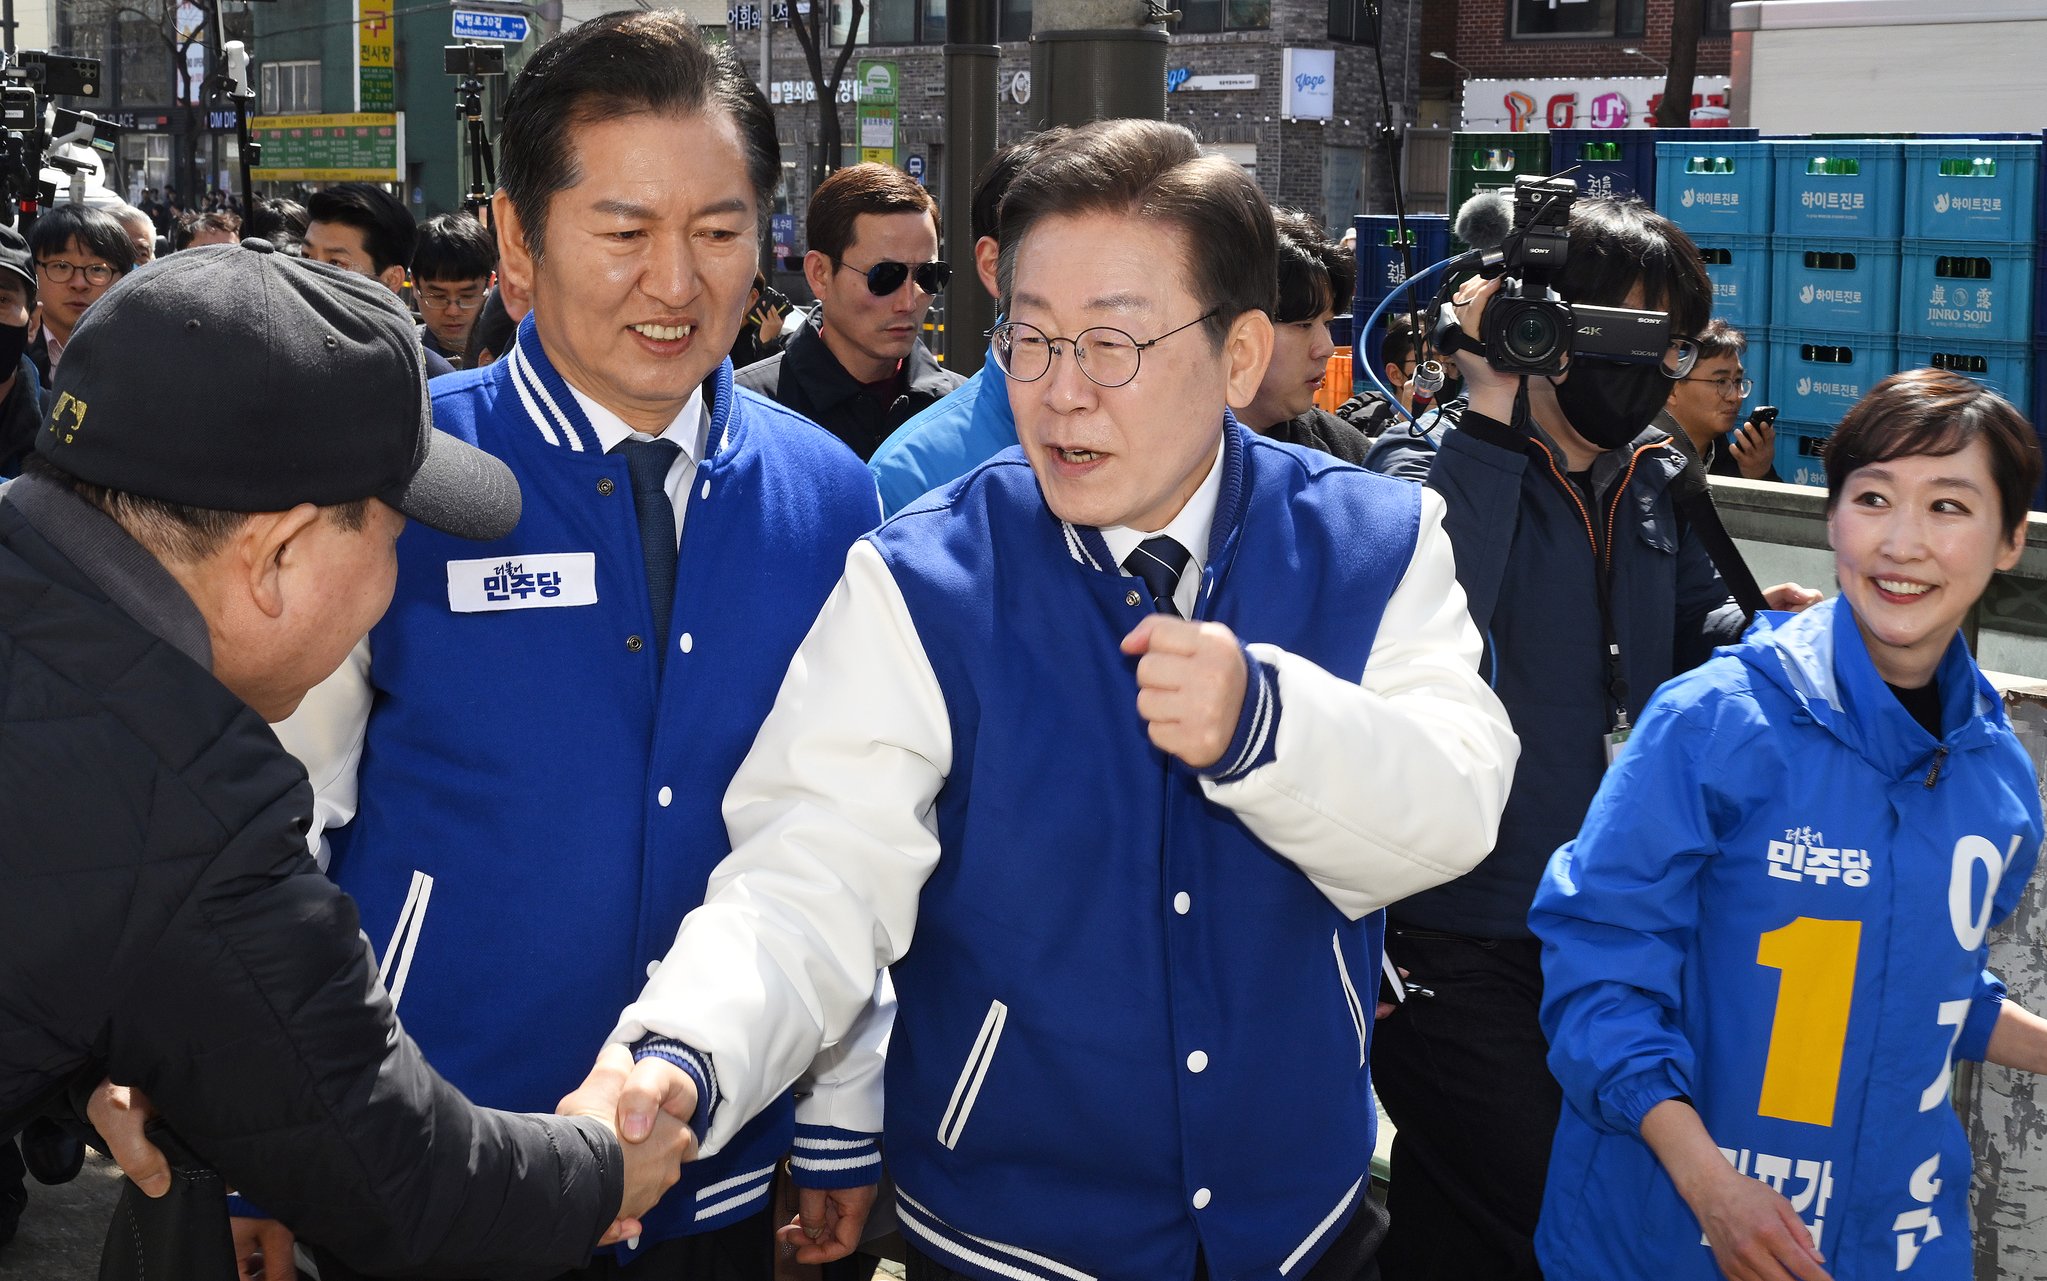 이재명 더불어민주당 상임공동선거대책위원장이 18일 서울 마포구 경의선숲길과 백범로 일대를 돌며 이지은(마포갑), 정청래(마포을) 후보의 지지를 호소하고 있다. 전민규 기자